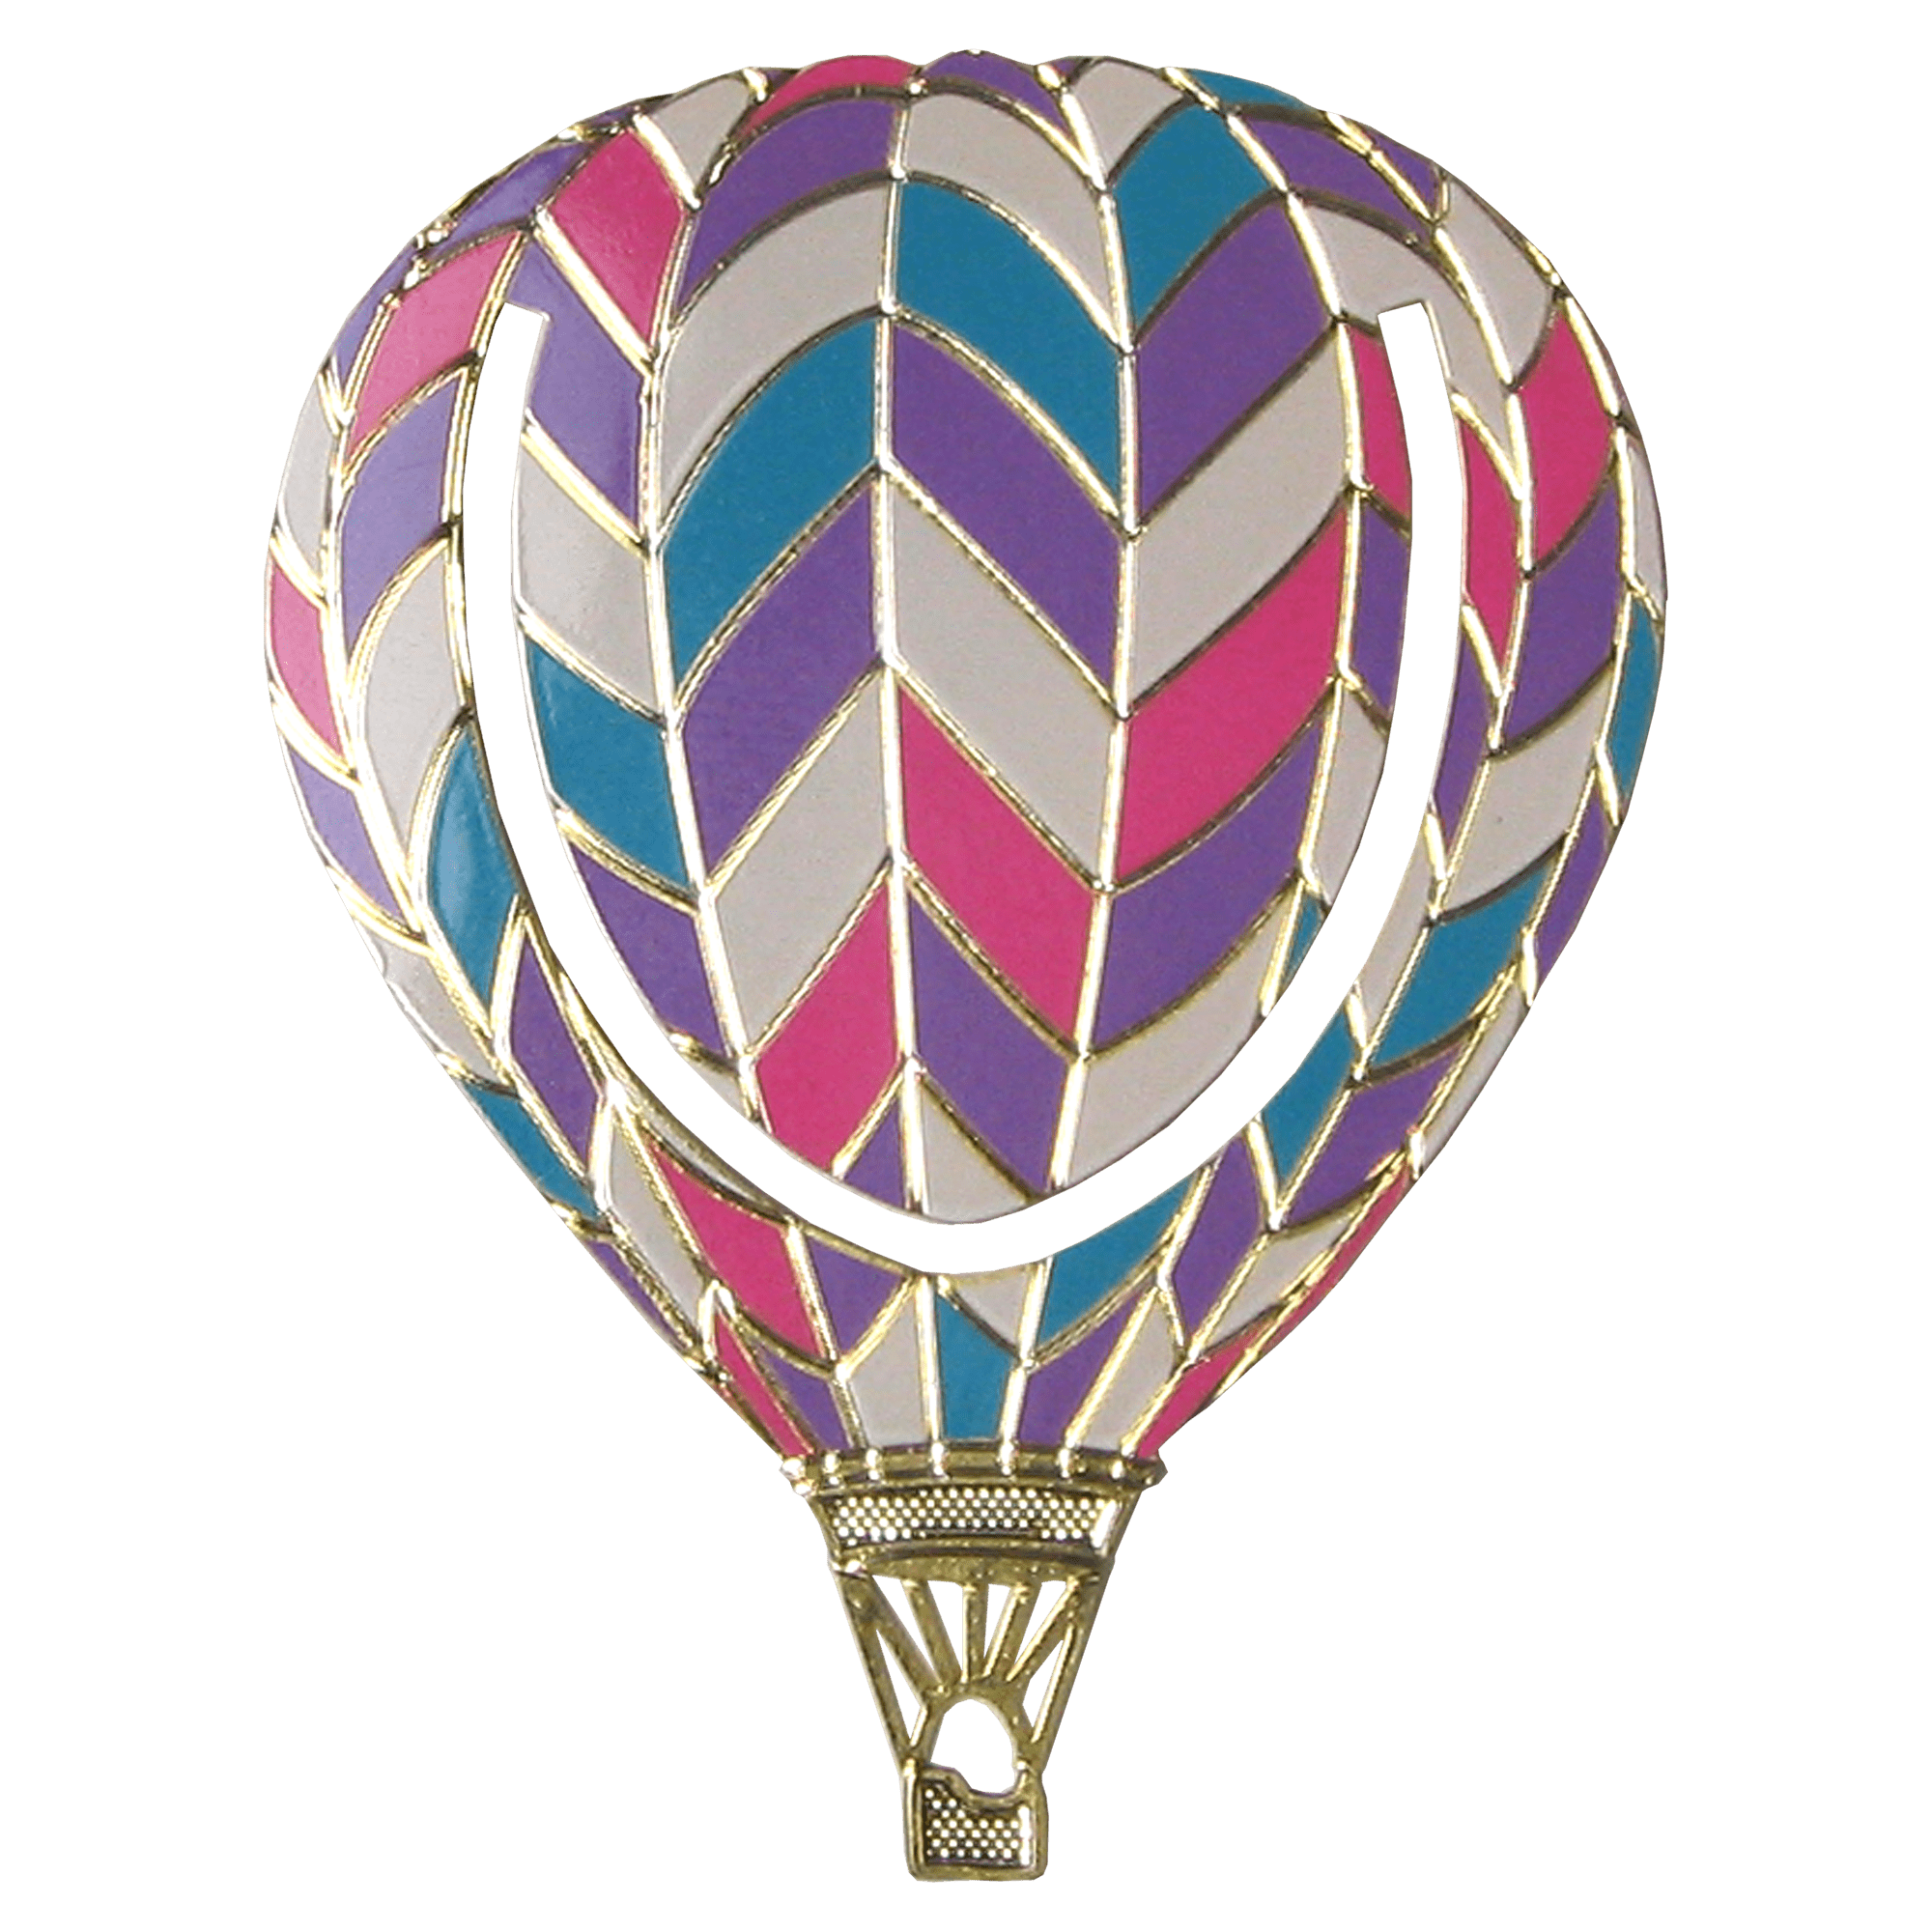 Brass Balloon Bookmark with 4 Color Silkscreen